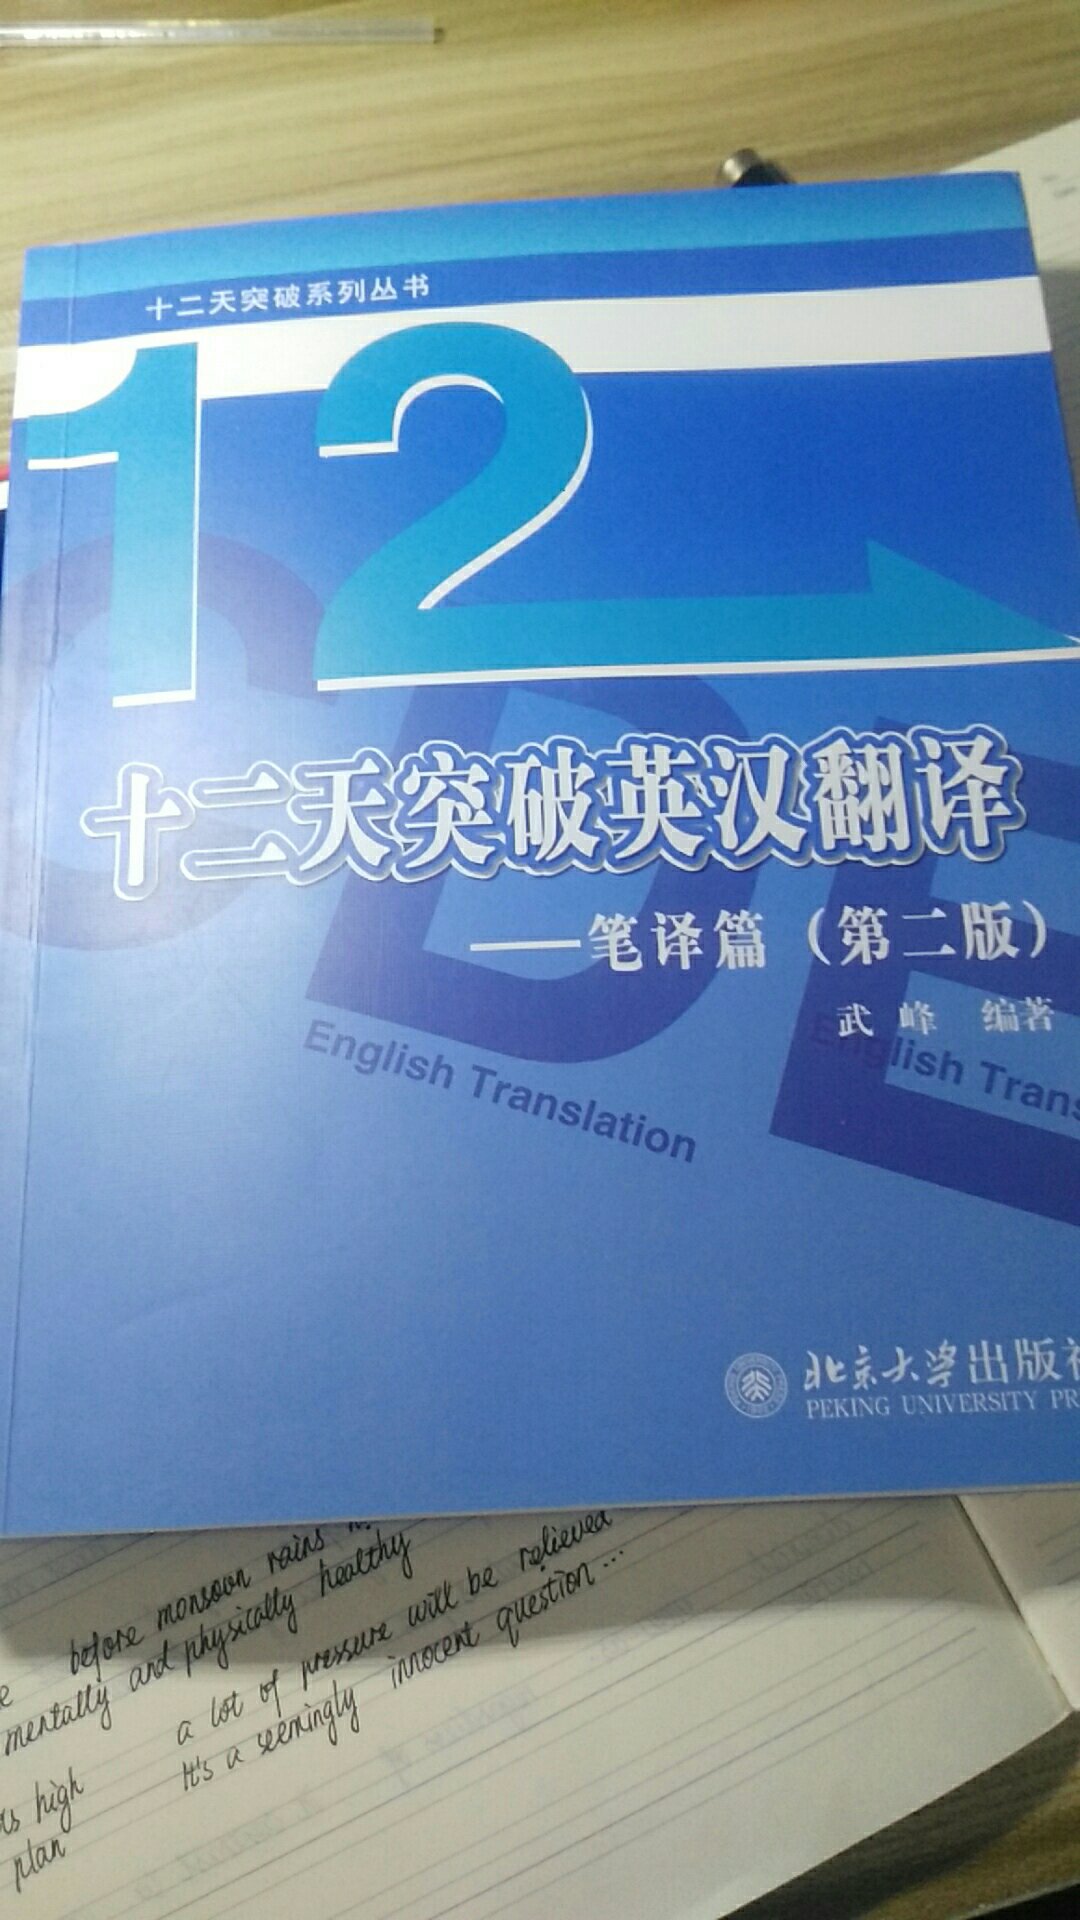 《十二天突破英汉翻译》译文质量实在无话可说，建议不要买。任何书里有点错误在所难免，但是这本书太过分了，看了开头五句，四句都有问题，尤其是照片里那个句子，那是中文吗？(图片中蓝色译文是另一本书里的答案，那本书理论部分很好，但是习题里有少数译文有点问题，可能没有充分校对。）